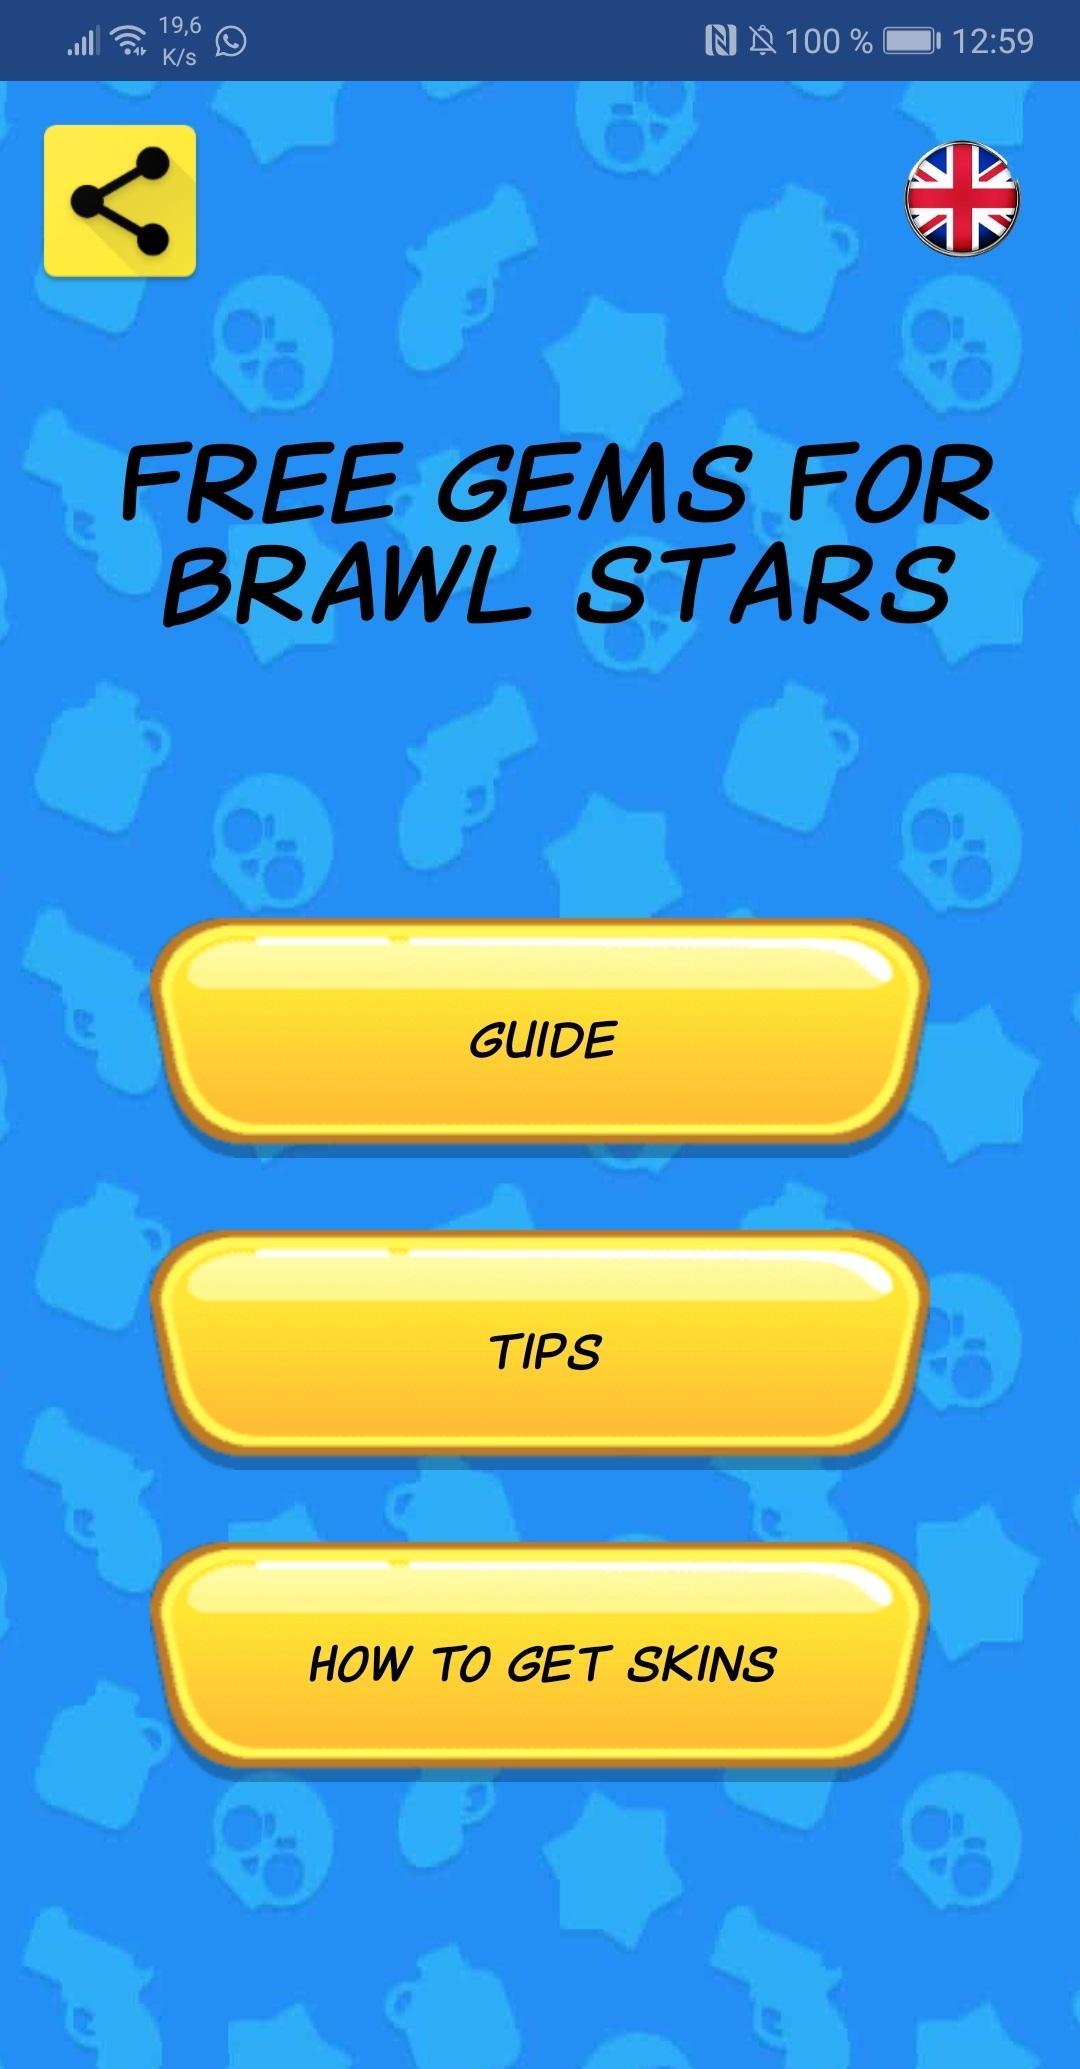 Free Gems For Brawl Stars Guide Coins For Android Apk Download - como ganhar gemas grátis no brawl stars em quebec